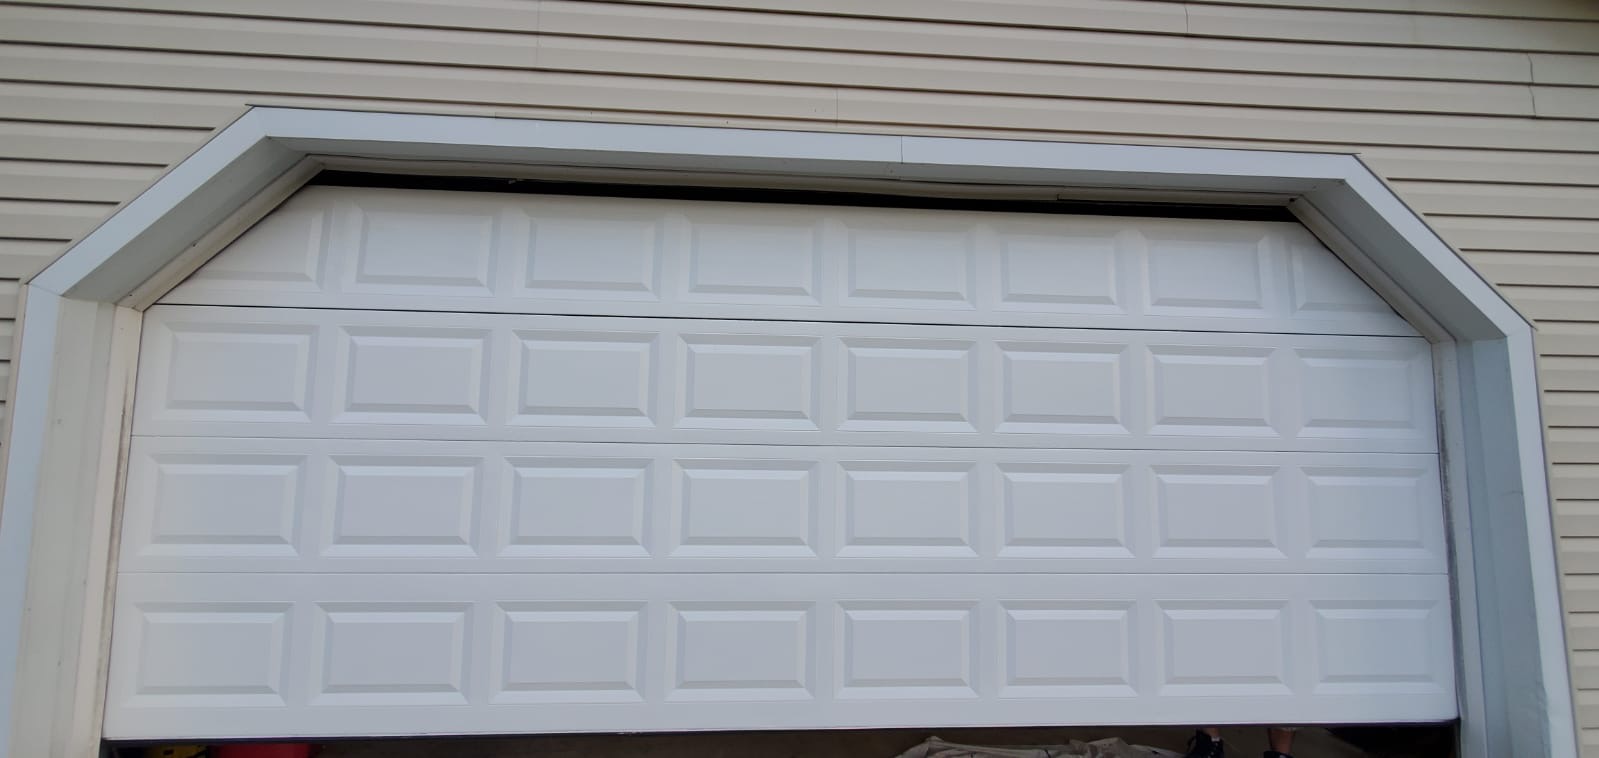 before painting garage door